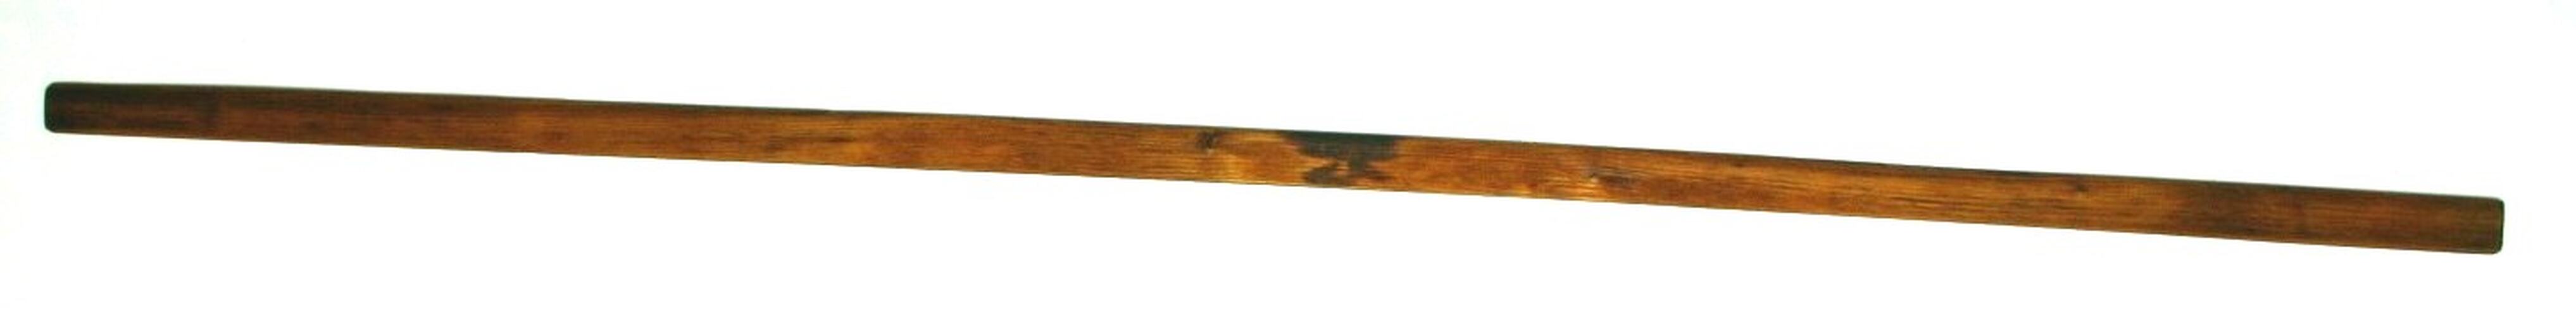 Warp Stick - Countermarch Floor Loom